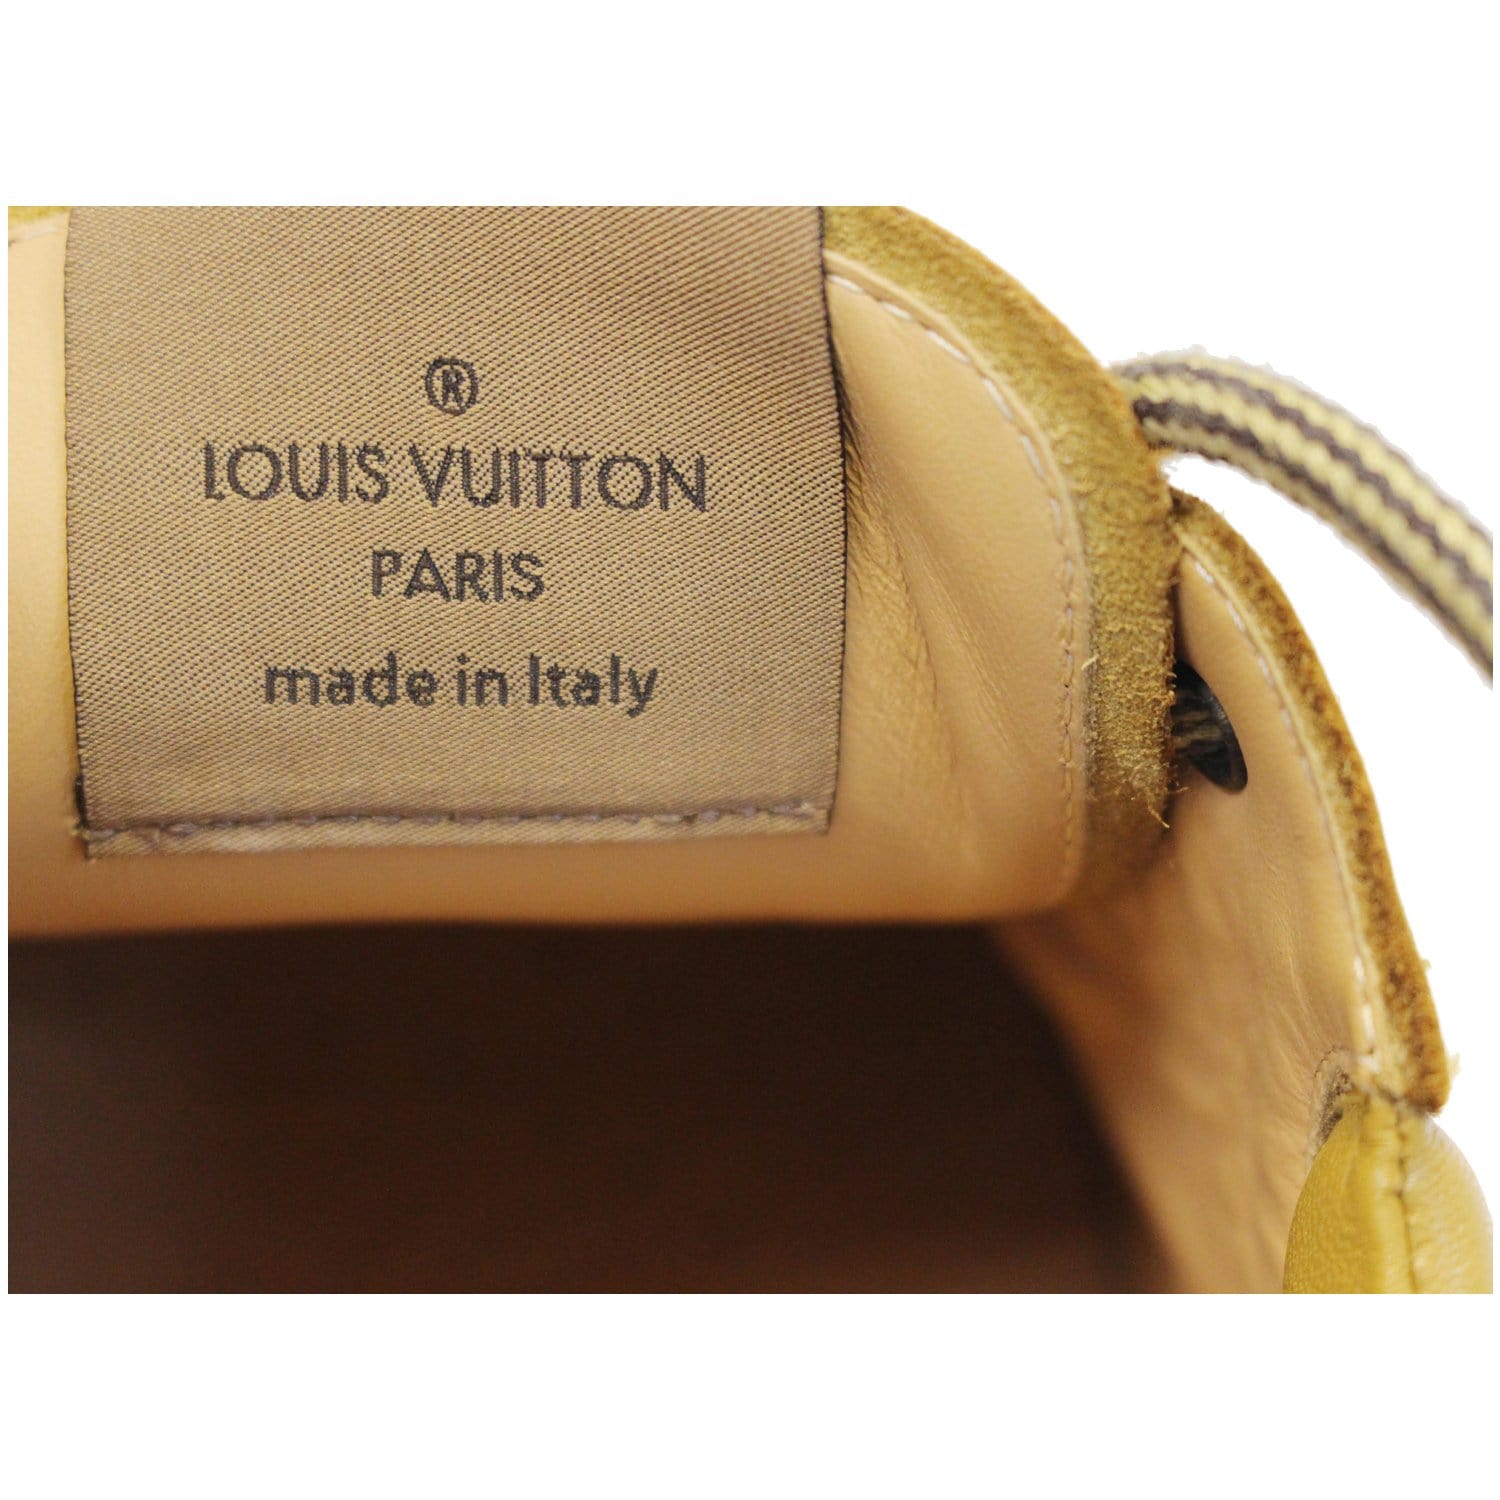 Sold at Auction: LOUIS VUITTON PAIRE DE BASKETS en cuir camel (Pointure 39)  Camel leather PAIR OF SNEAKERS (Size 39) ASSEZ BON ÉTAT (m